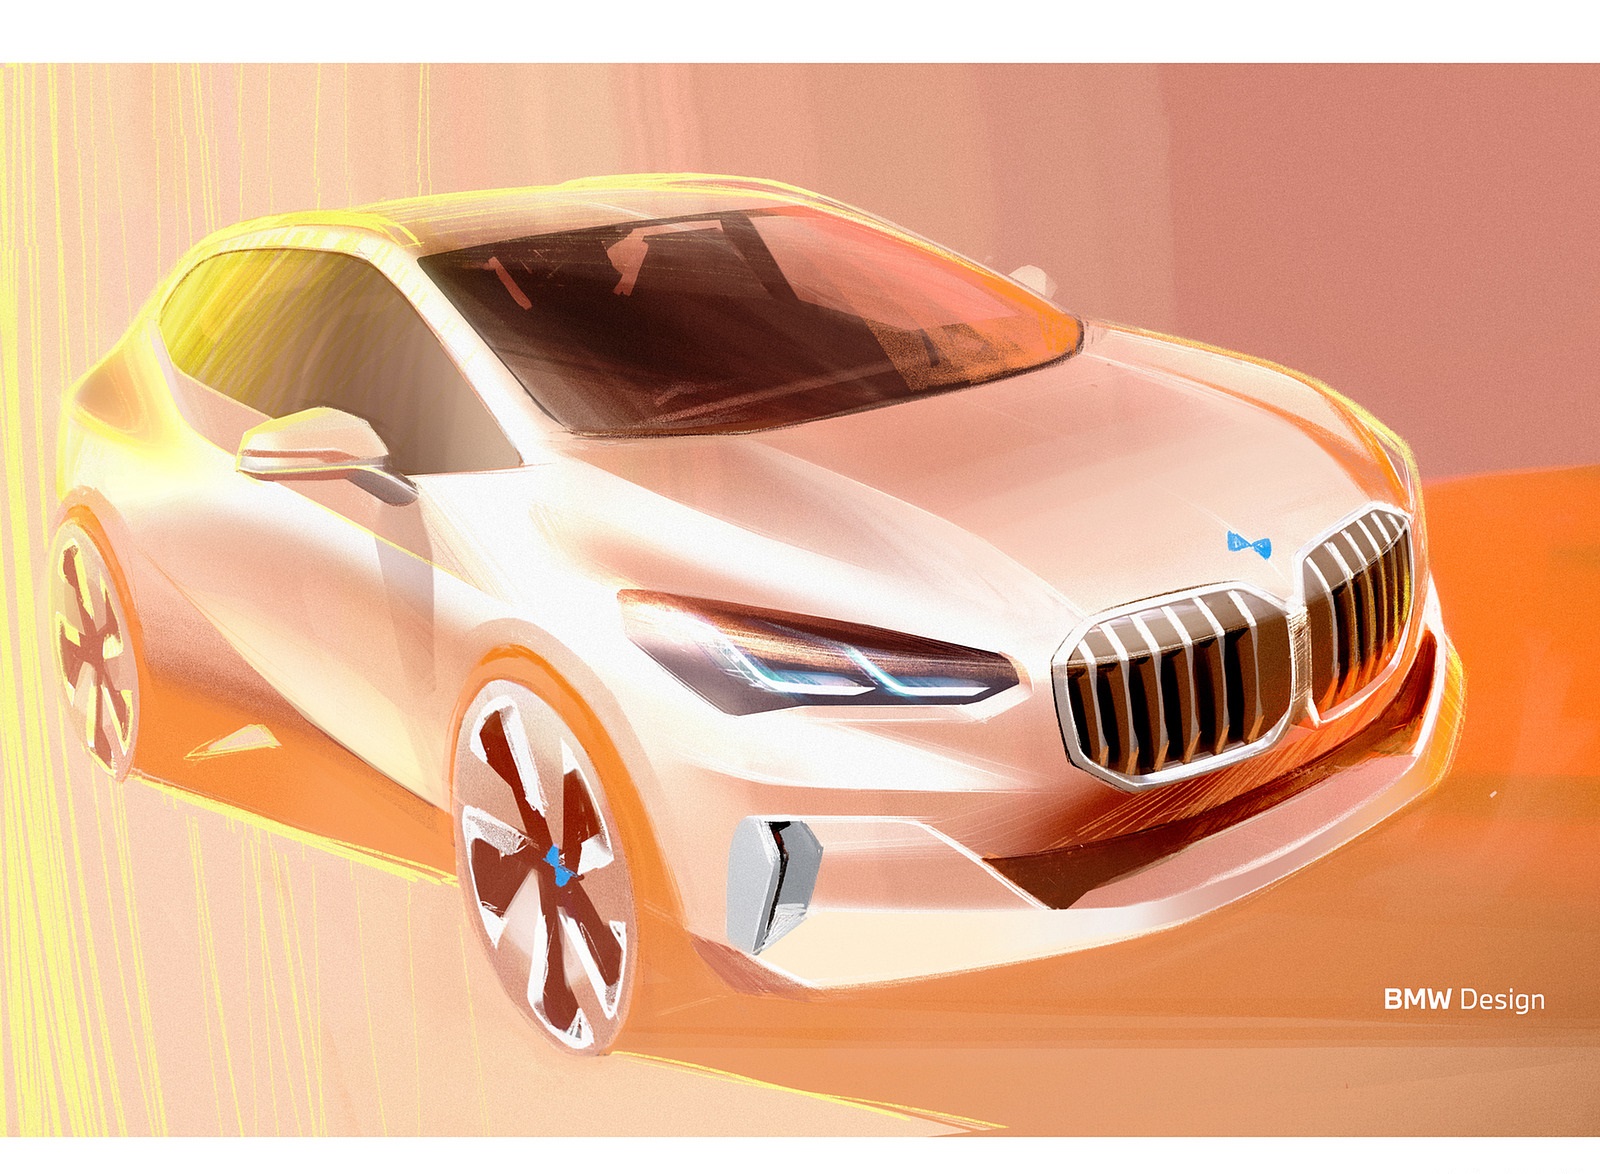 2022 BMW 223i Active Tourer Design Sketch Wallpapers #69 of 231